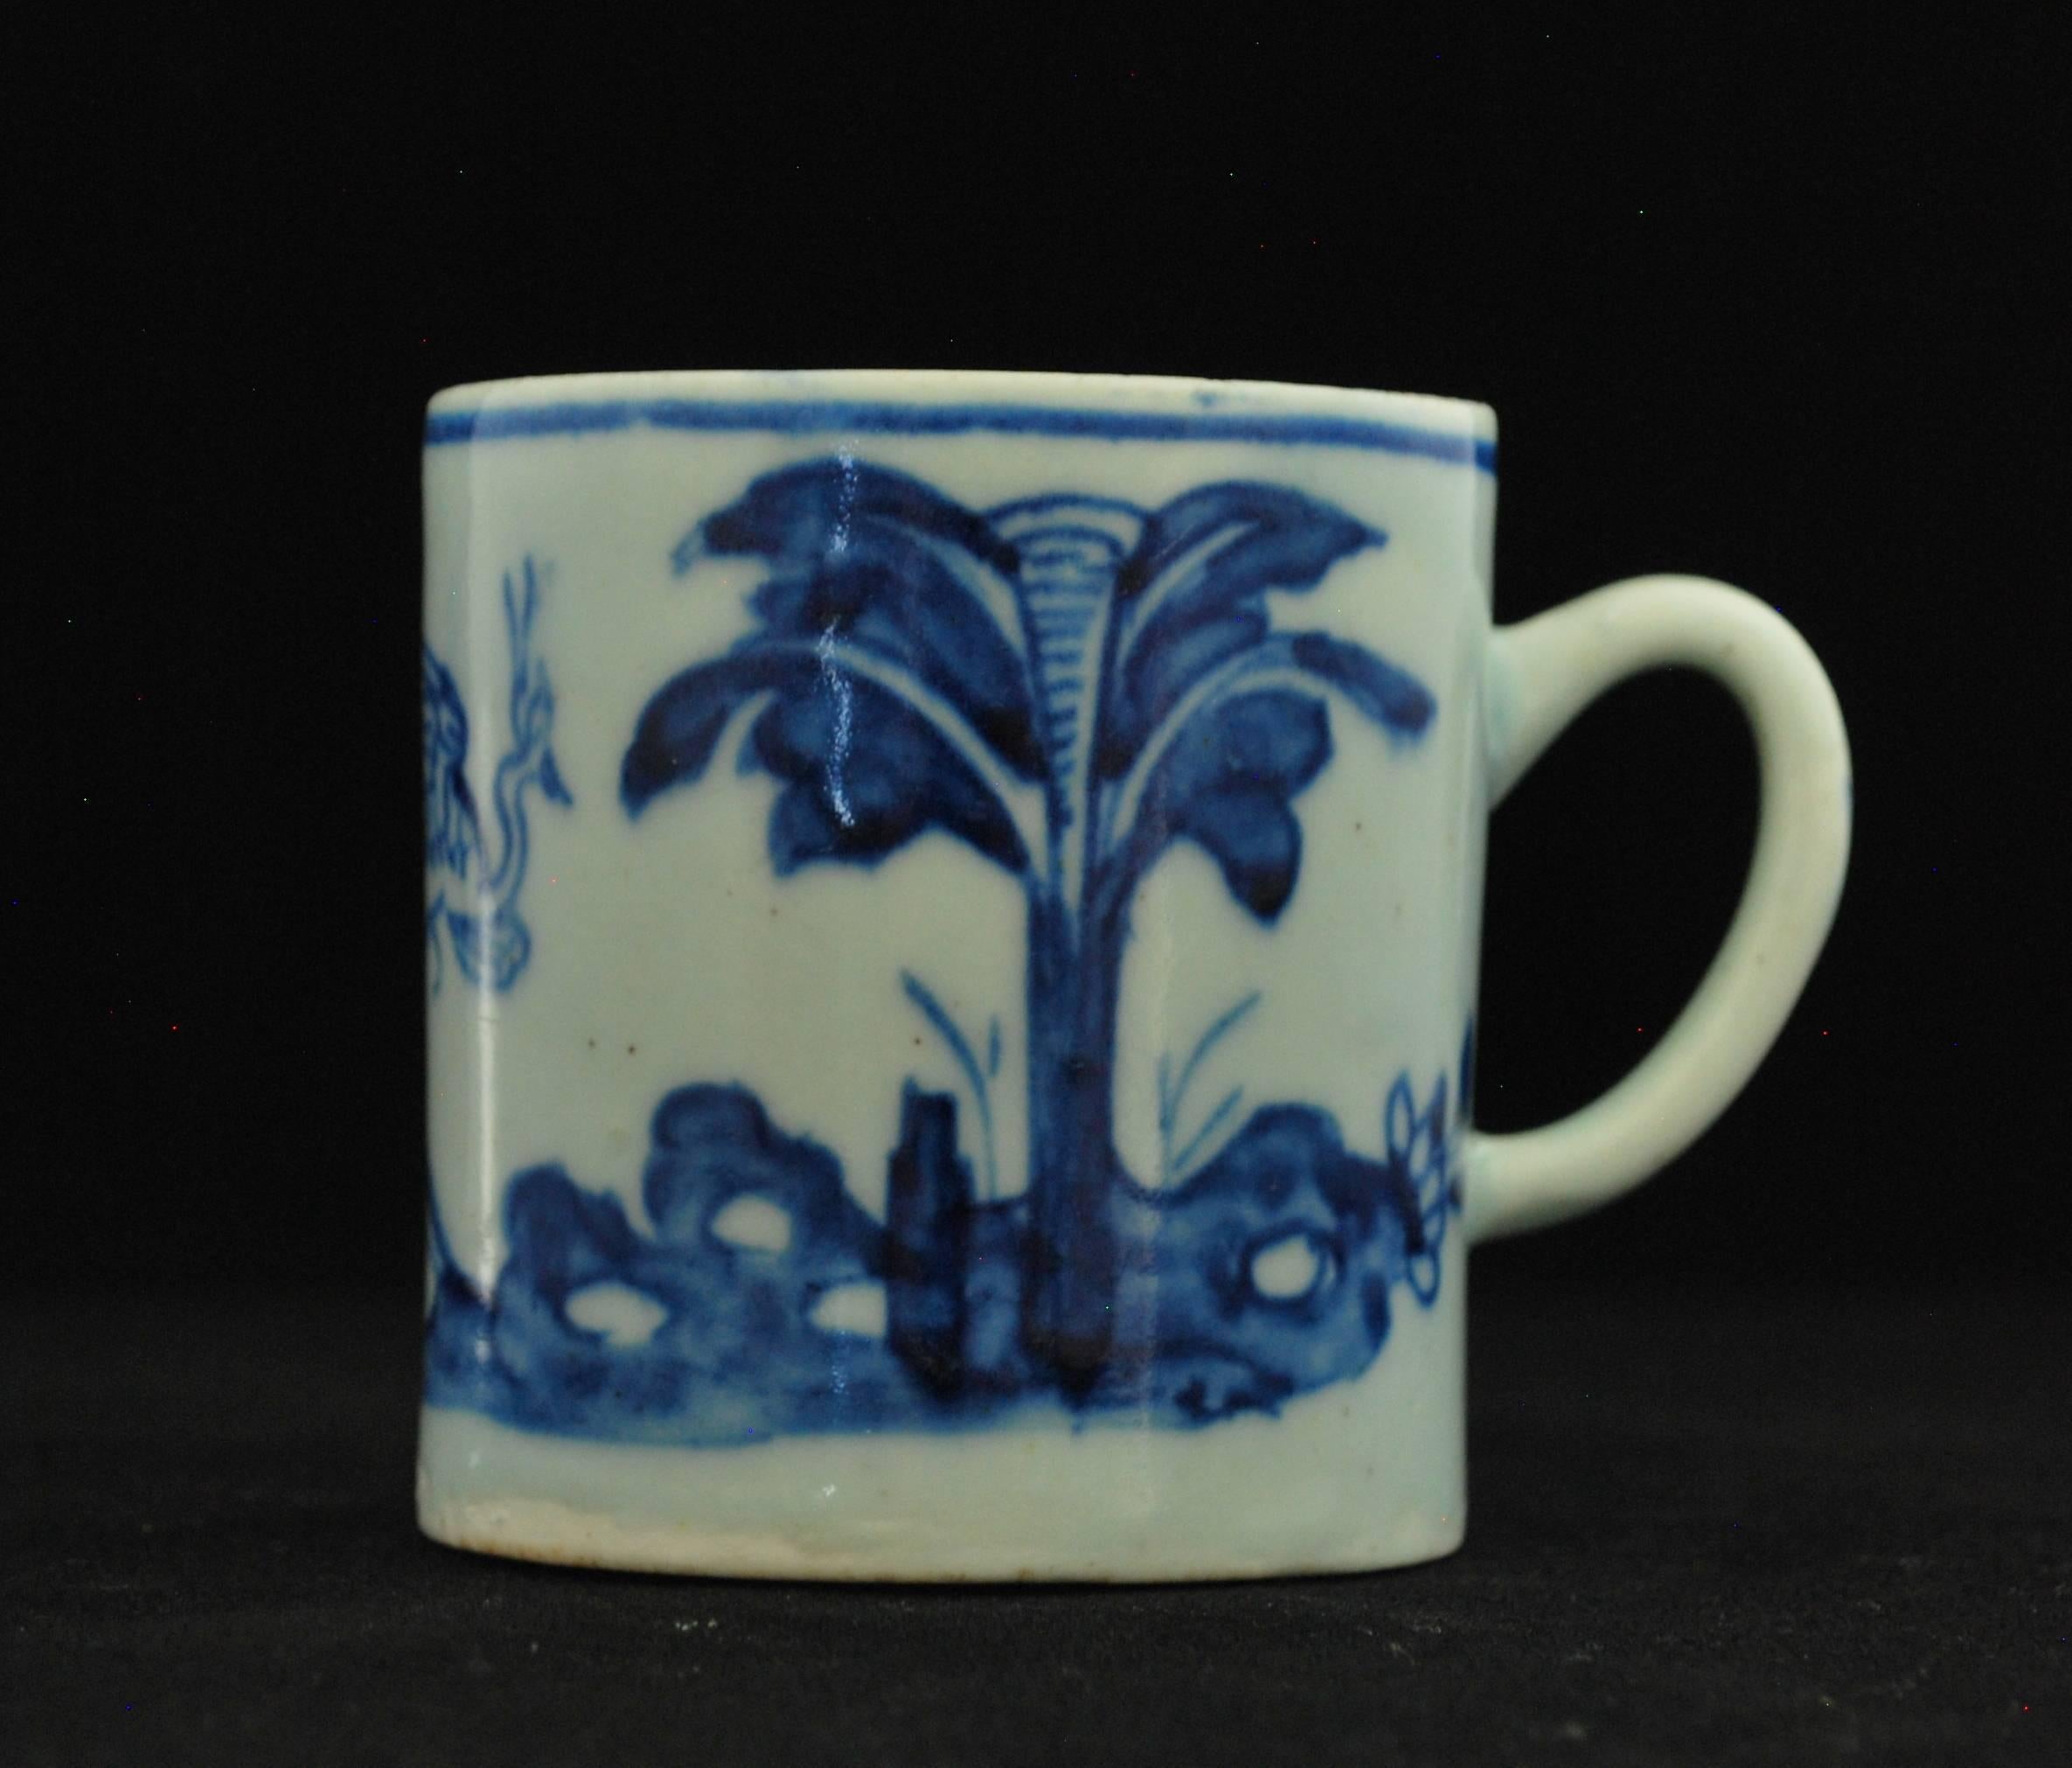 Eine frühe Kaffeekanne, die unter der Glasur mit dem Muster Storch und Bananenbaum bemalt ist.

Provenienz Sammlung Taylor; Sammlung Sutherland. 
 